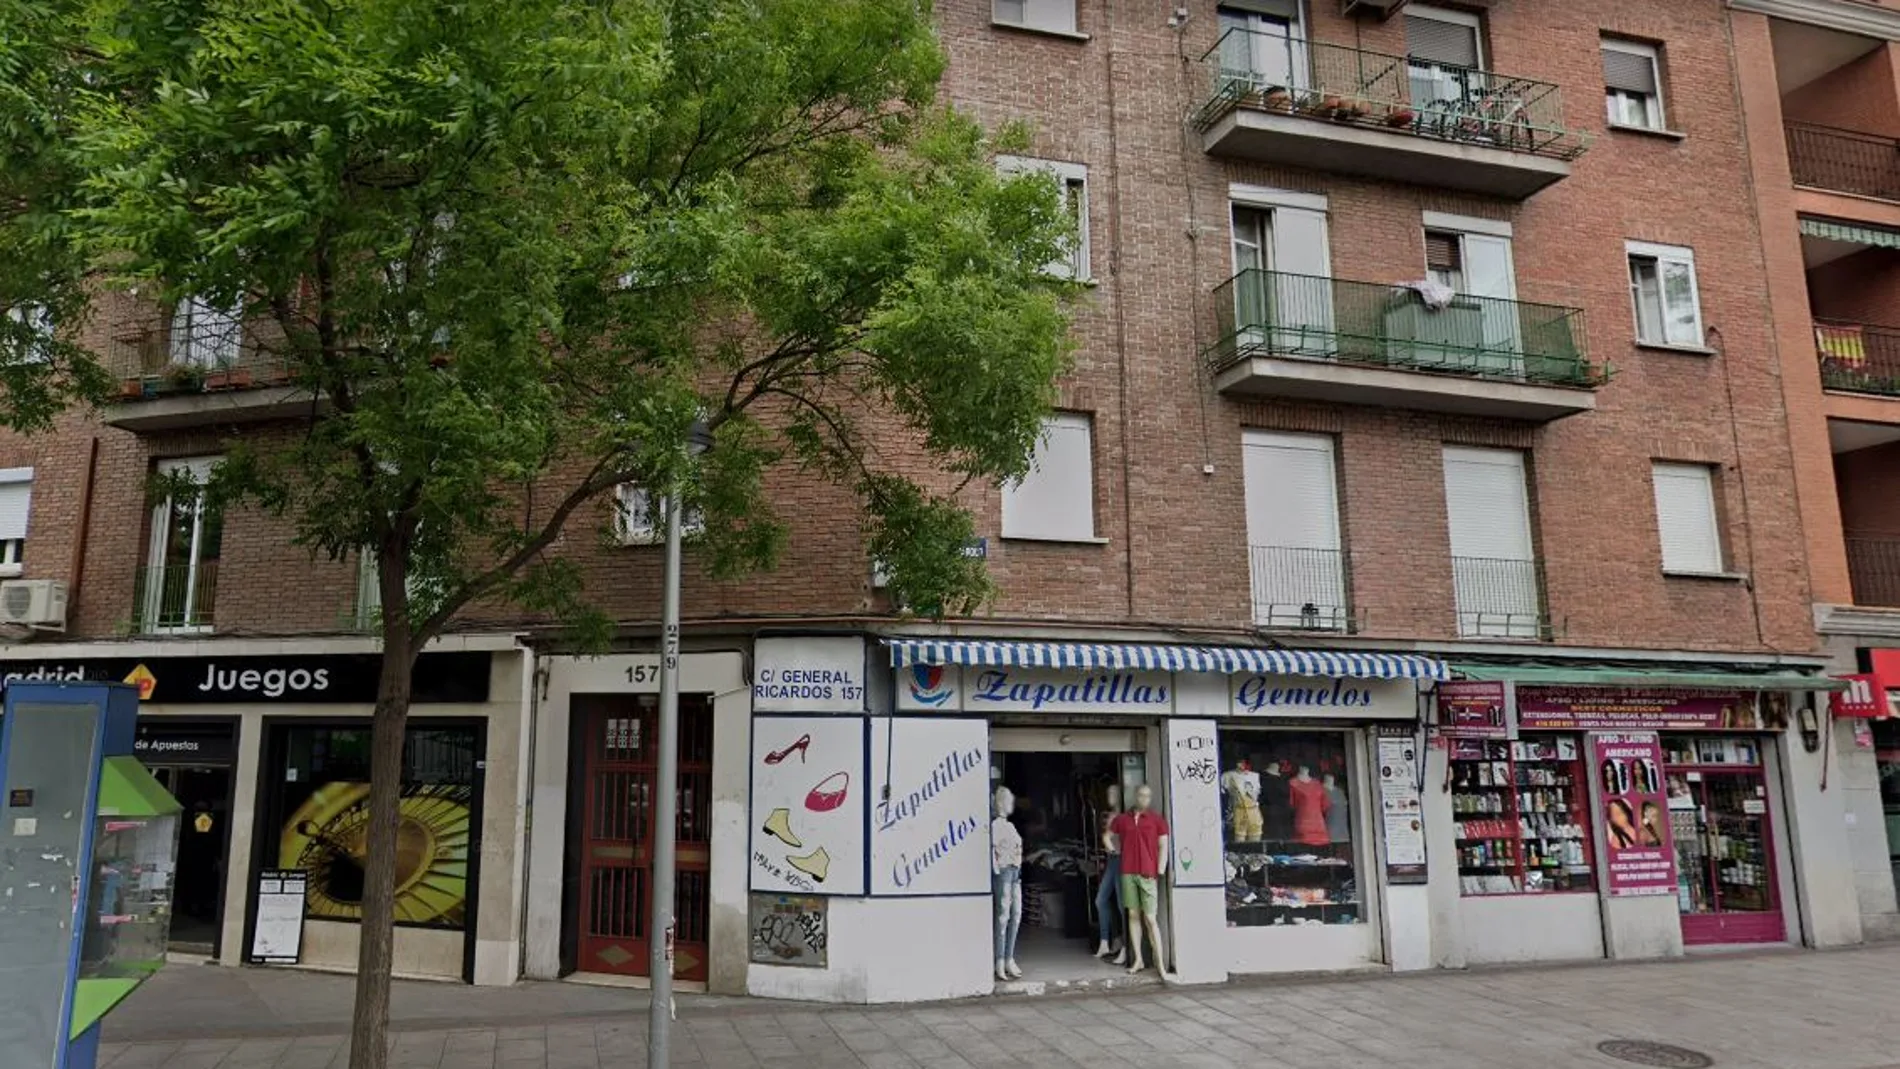 Un ciudadano chino de 46 años murió anoche en un prostíbulo situado en el número 157 de la calle del General Ricardos